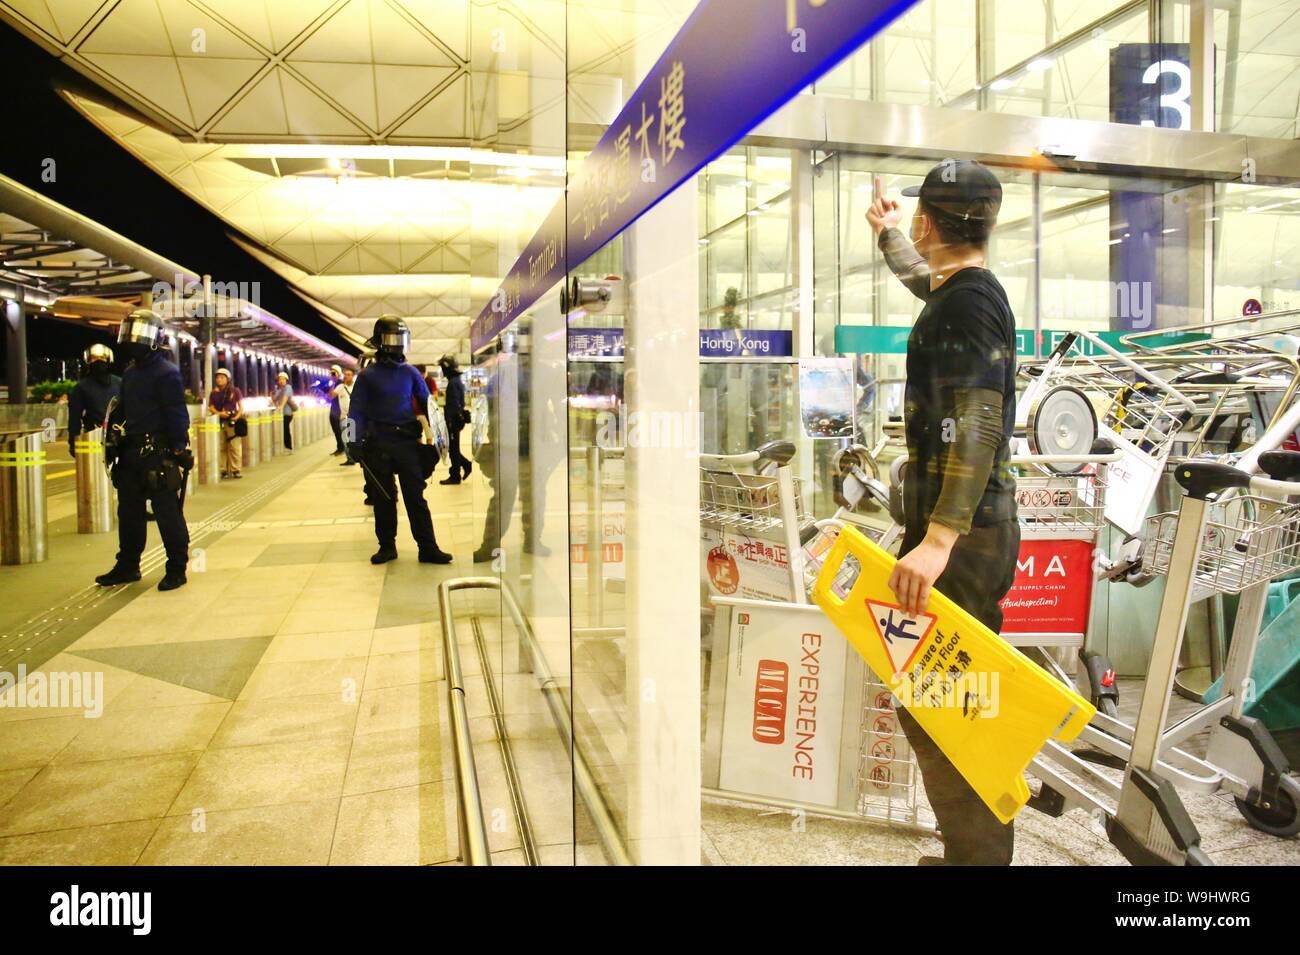 Hong Kong. 13 Aug, 2019. Los disturbios estallan en el Aeropuerto Internacional de Hong Kong, cuando la policía intentan rescatar a dos hombres chinos que son sospechosos de ser agentes encubiertos de la China continental y, por tanto, retenidos por los manifestantes en el interior del aeropuerto. Los enfrentamientos estallan a media noche, spray de pimienta se usa y unos pocos manifestantes son arrestados. Crédito: Gonzales Foto/Alamy Live News Foto de stock